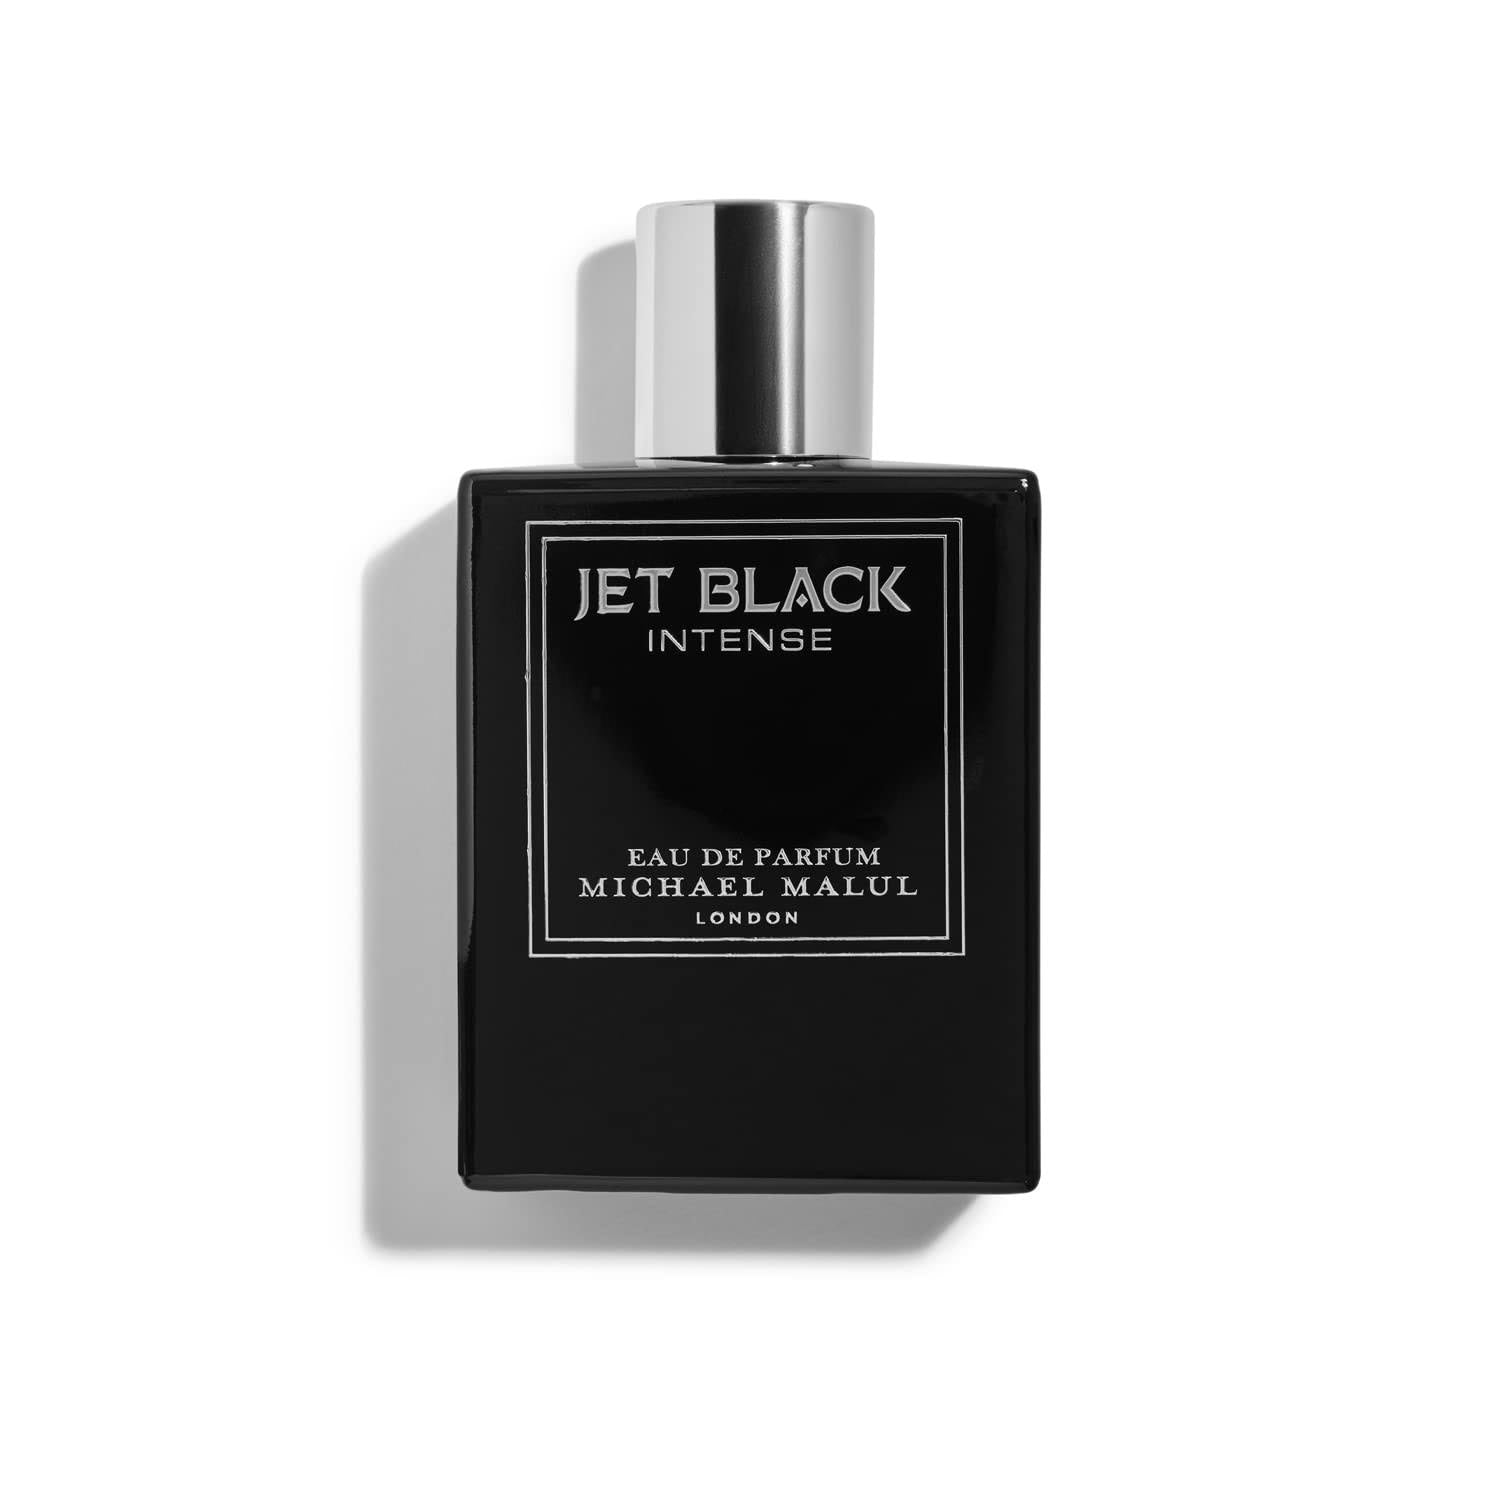 Jet Black Intense by Michael Malul For Men 3.4 oz Eau de Parfum Spray